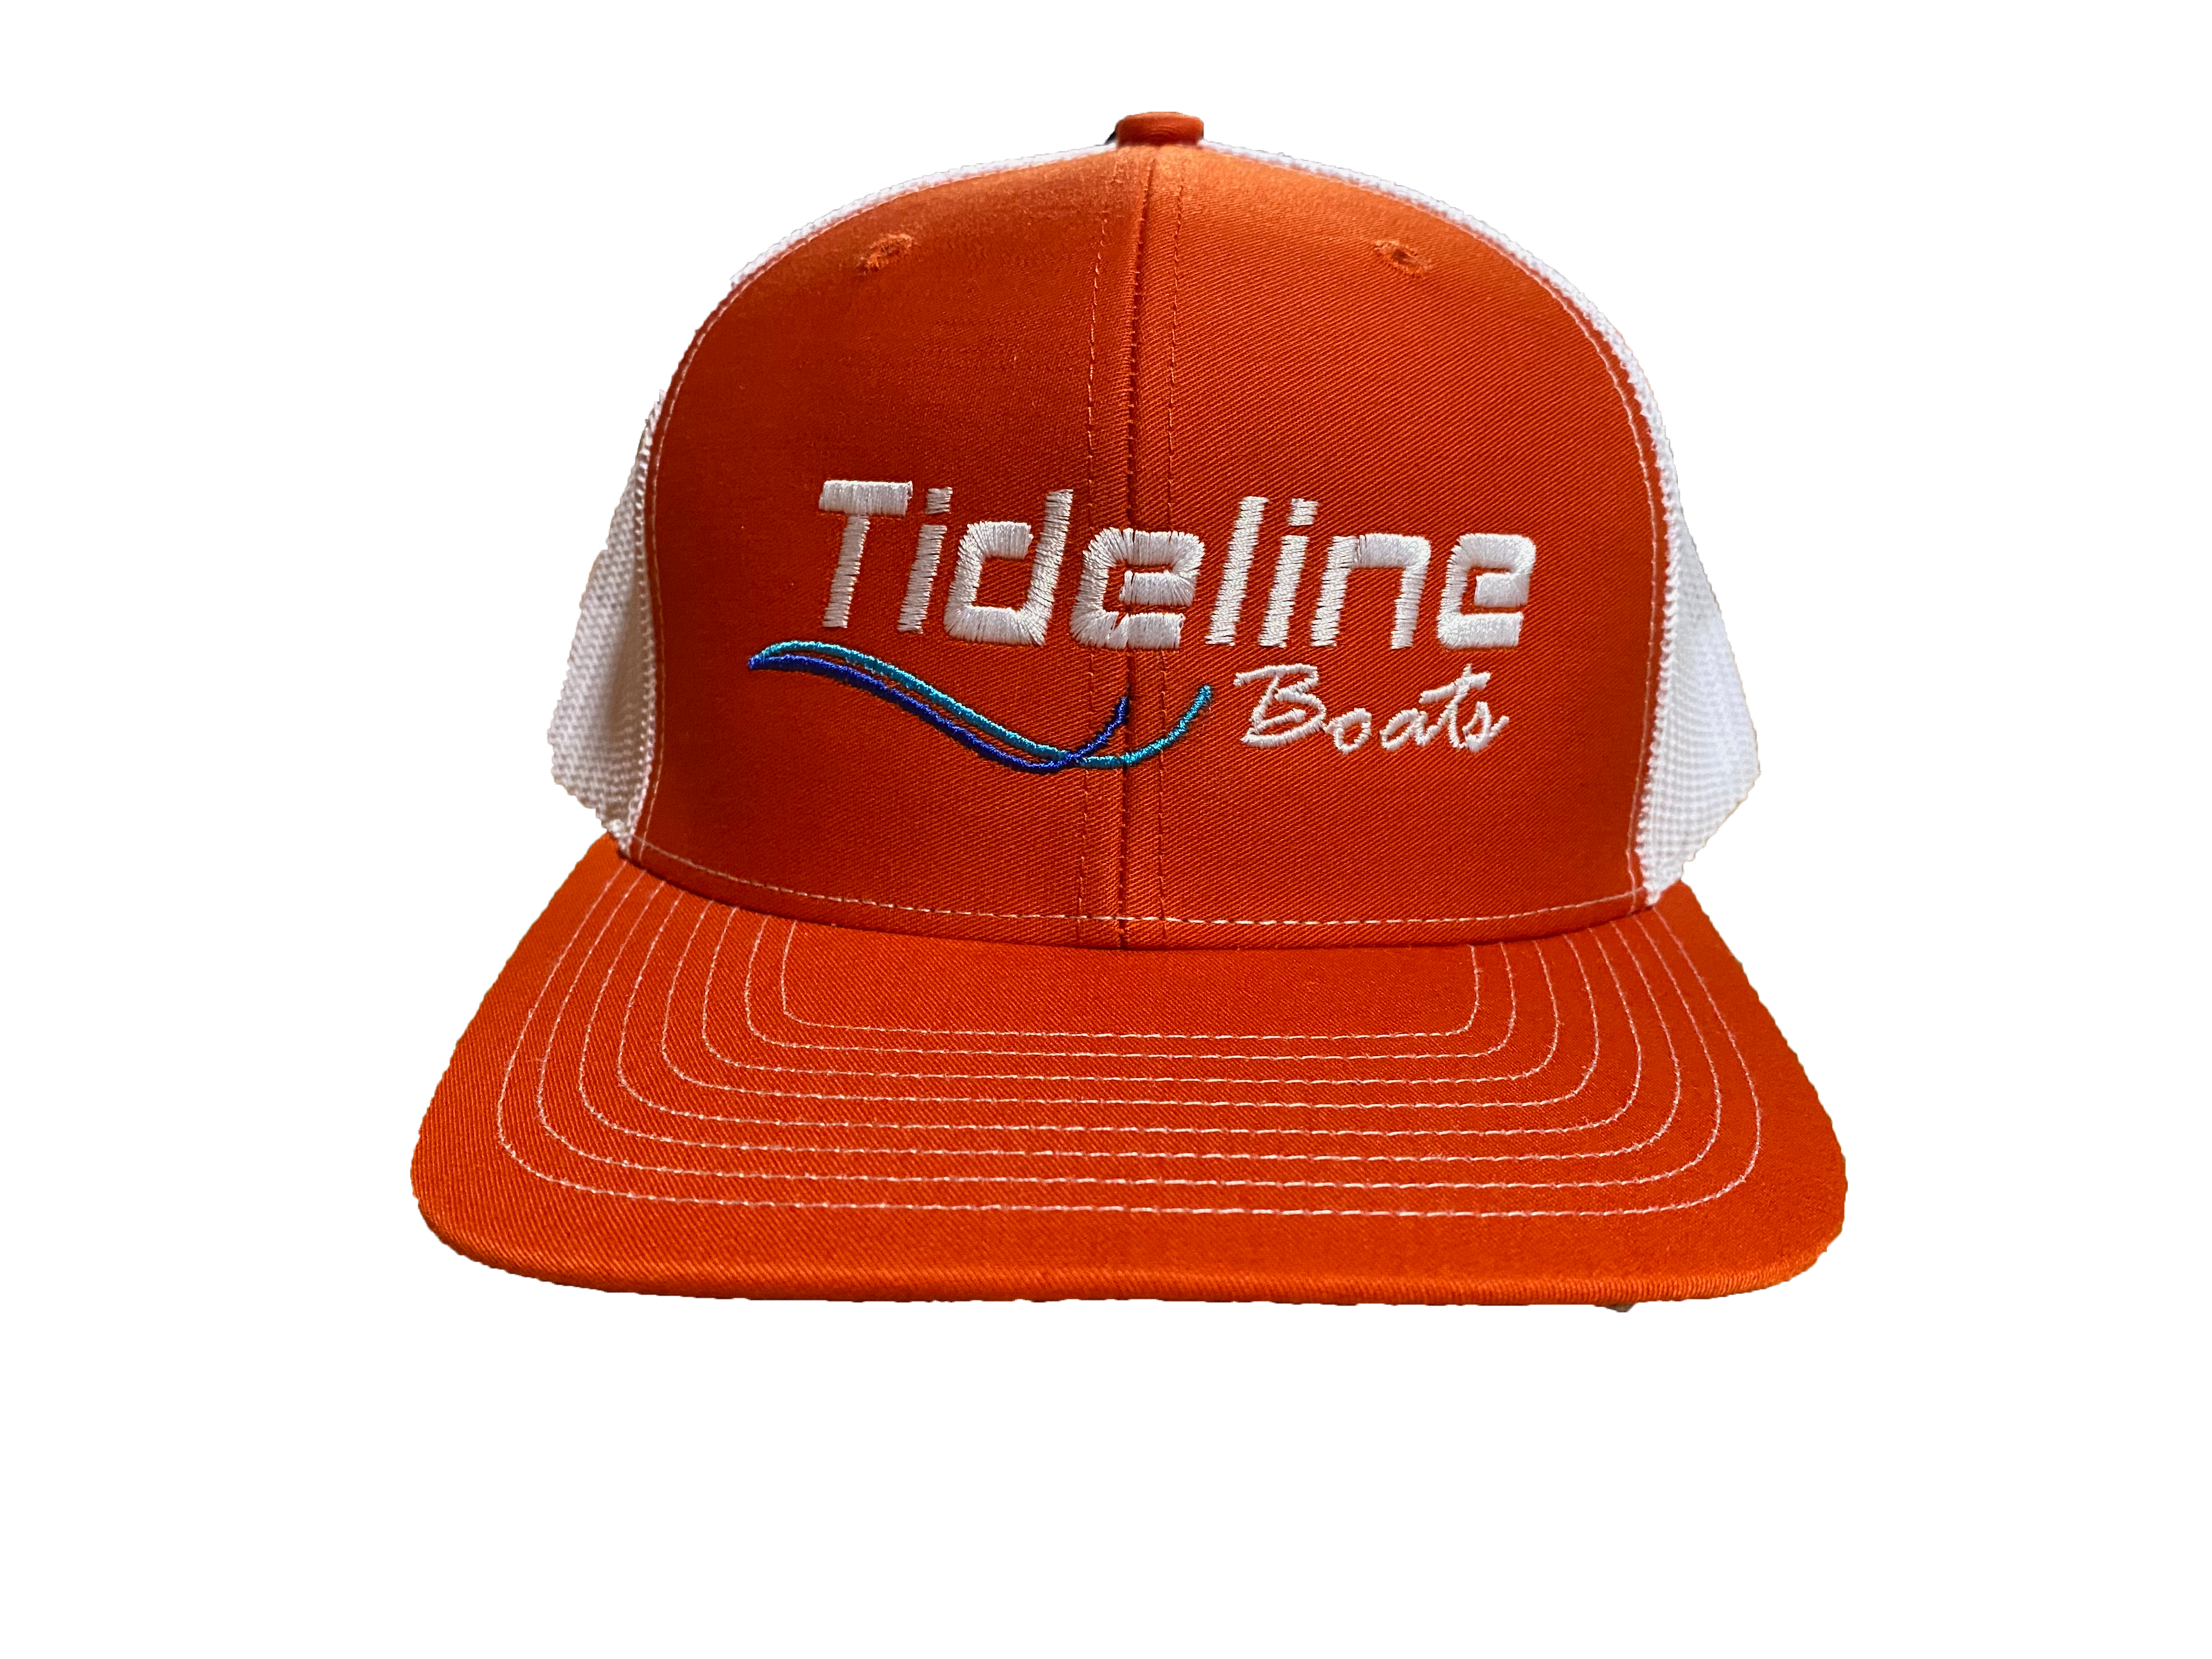 Tideline Boats Orange Trucker Hat